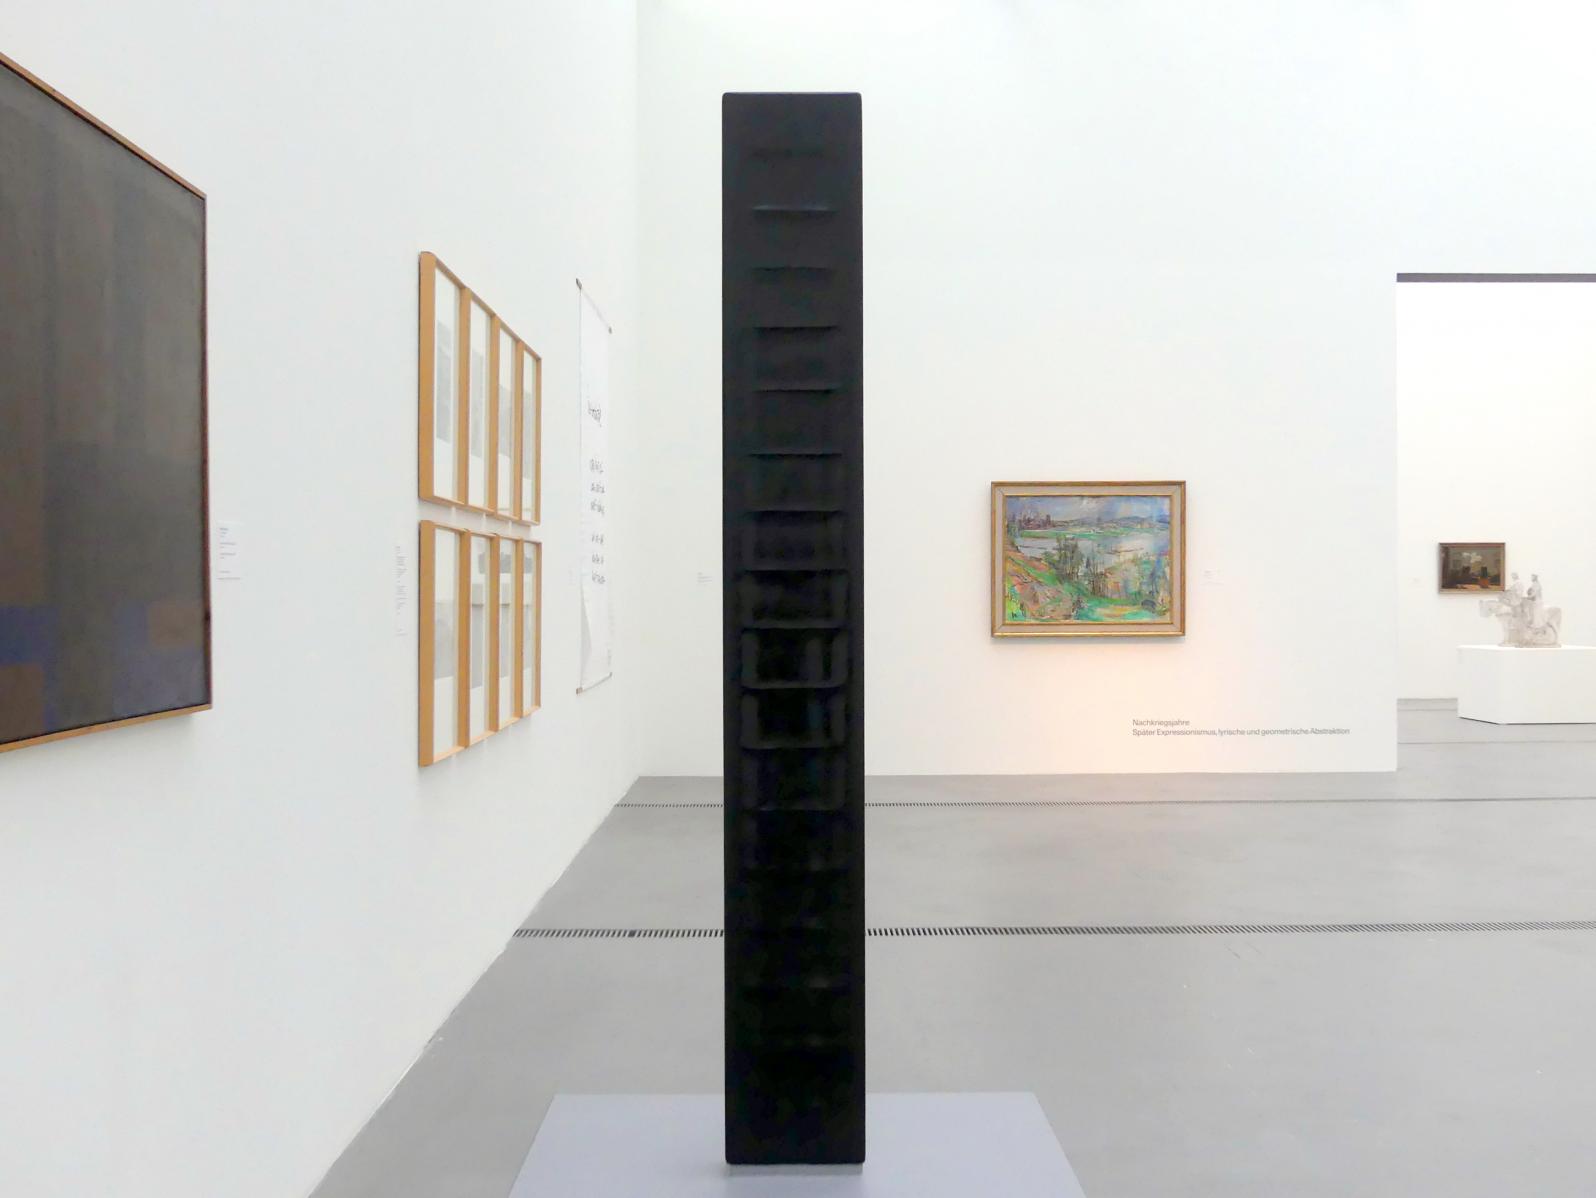 Karl Prantl (1965–1985), Meditation, Linz, Lentos Kunstmuseum Linz, Saal 7 - Nachkriegsjahre, 1965